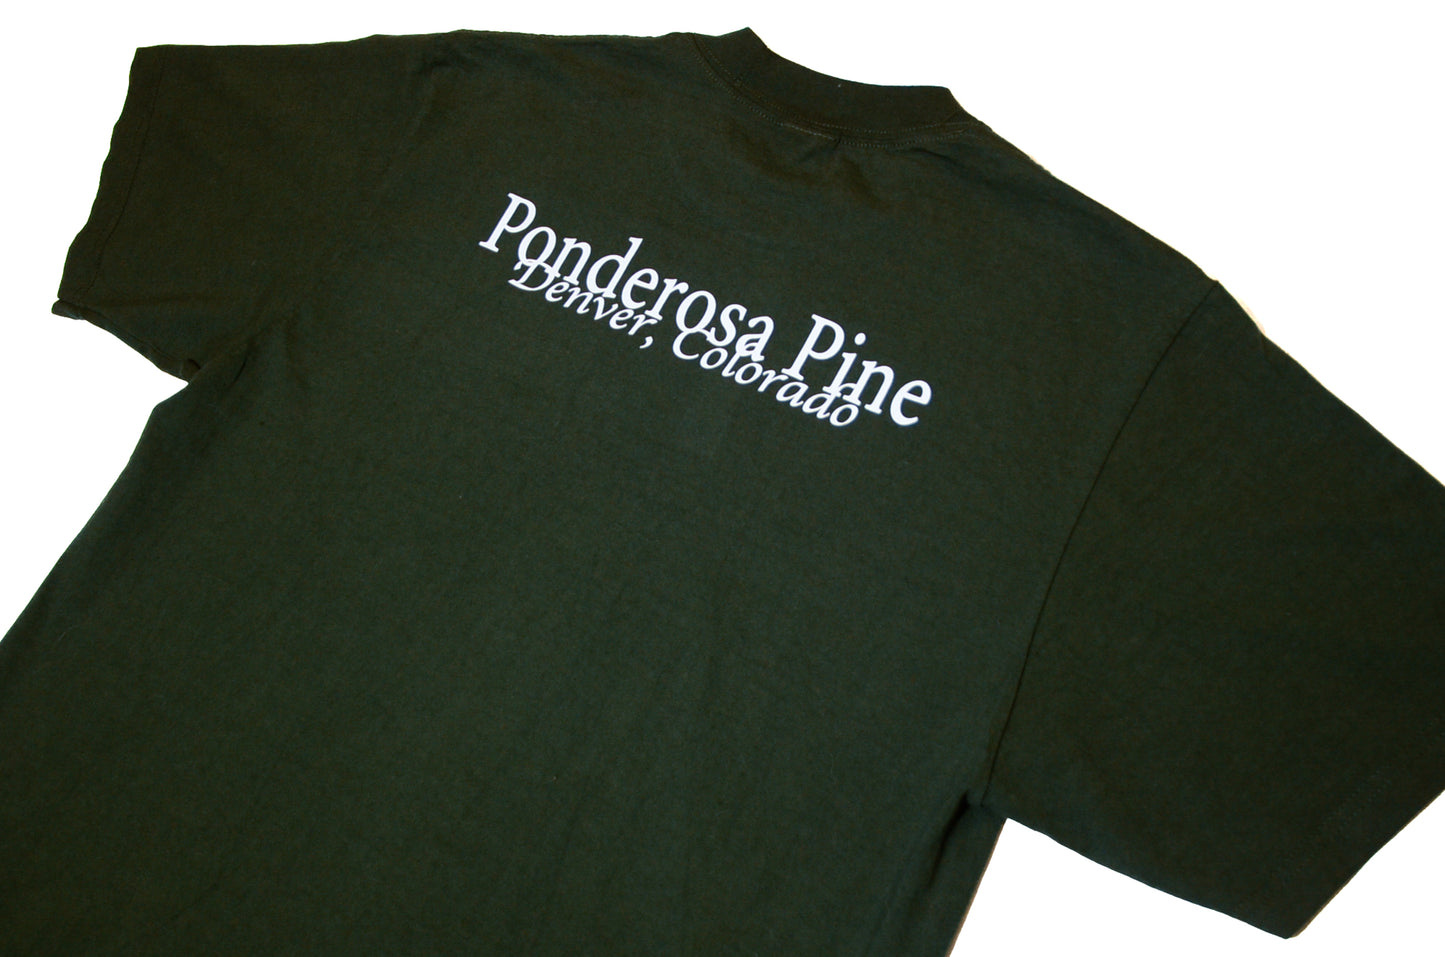 Pine Green Heavyweight T-shirt